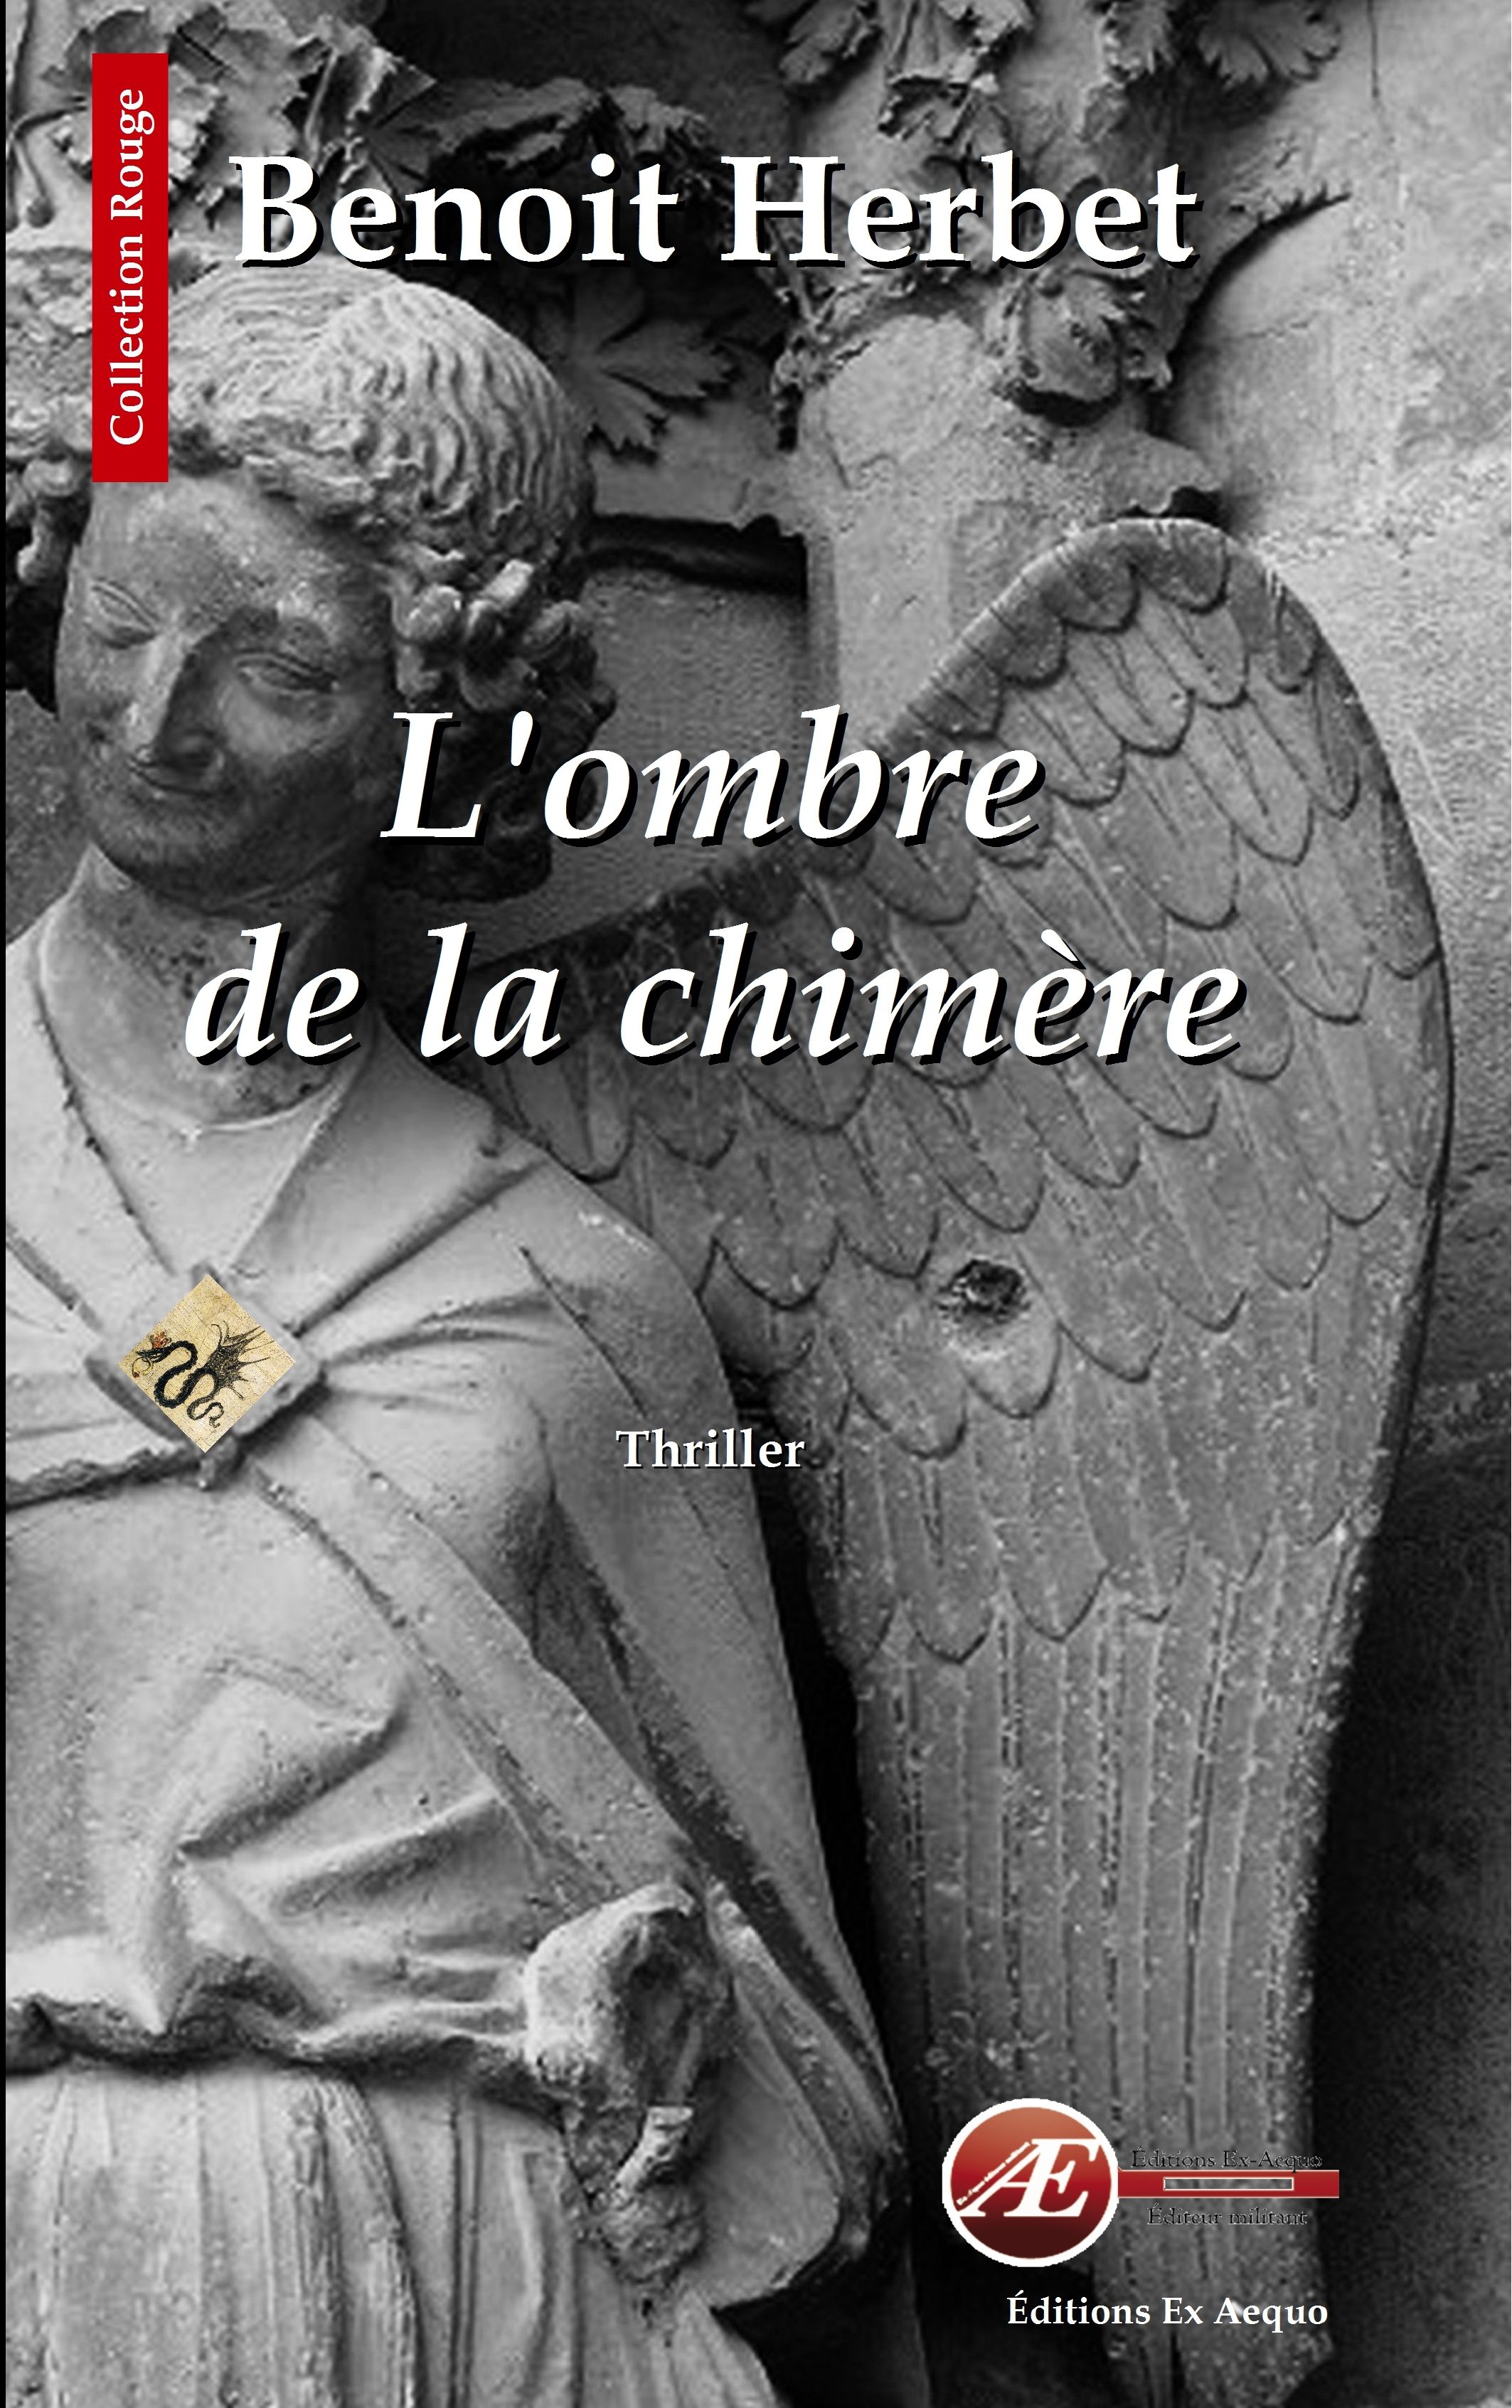 You are currently viewing L’ombre de la chimère, de Benoit Herbet